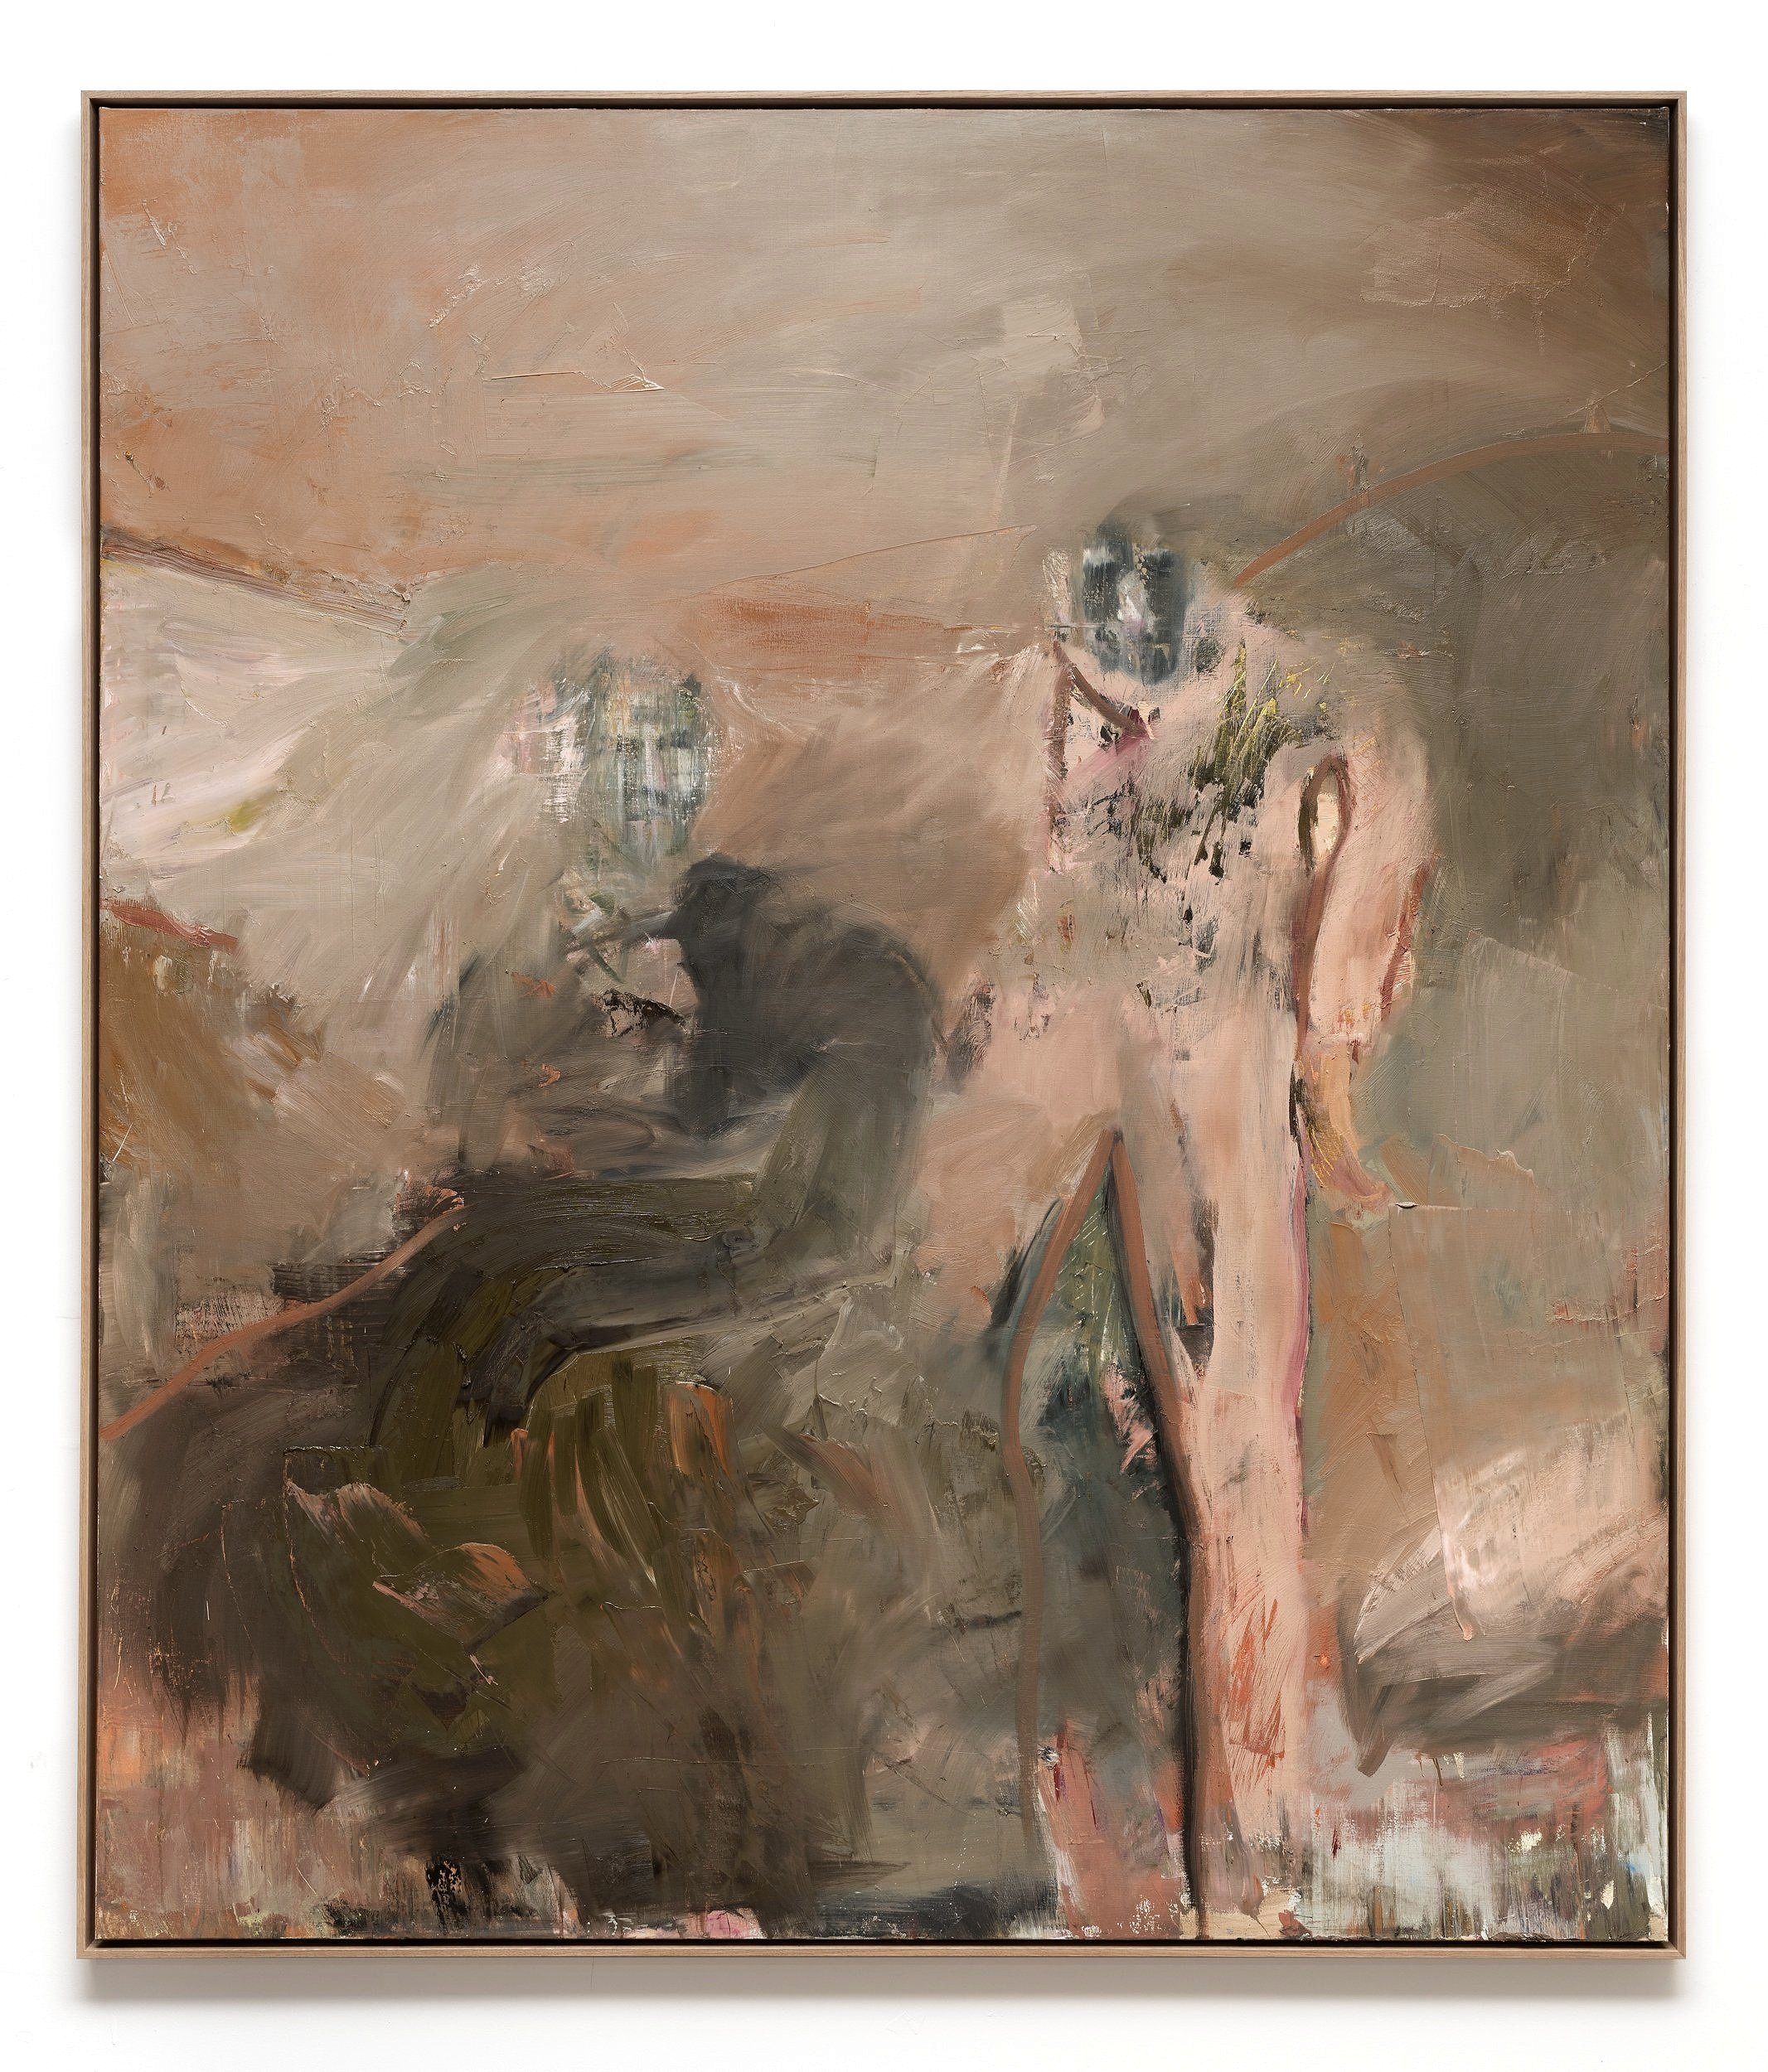   Zwei Gestalten #I,  20230                                                                                      Oil on canvas, 210 × 180 cm 